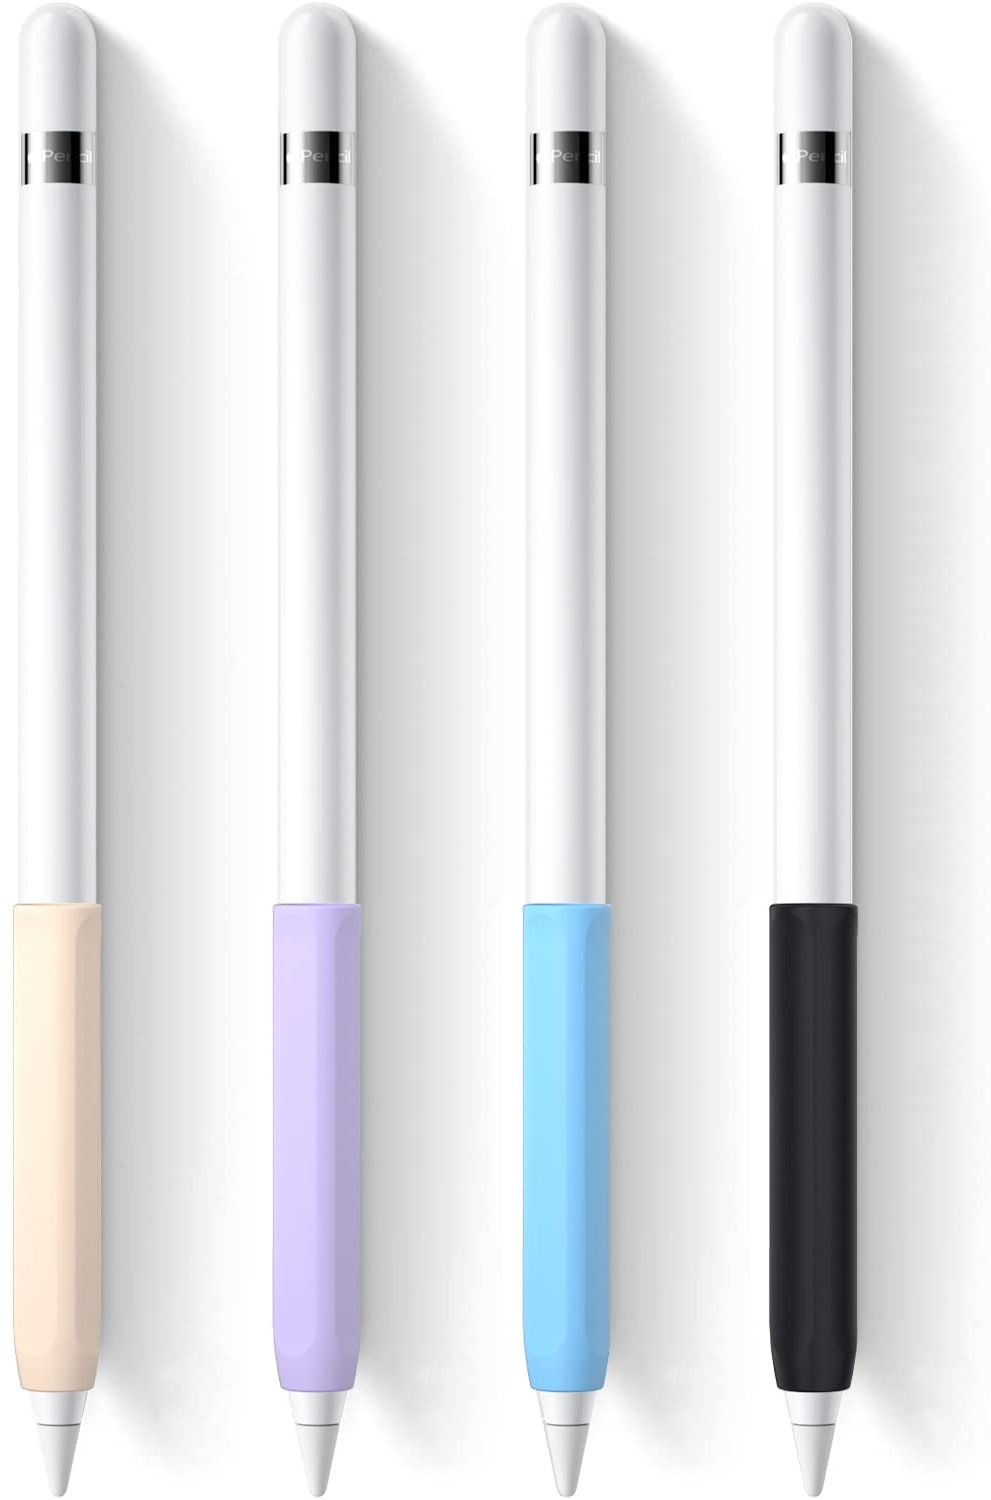 YINVA 4 x Griffhalter, kompatibel mit Apple Pencil der 1. Generation, Premium-Silikon, ergonomische Schutzhülle, Zubehör, kompatibel mit iPad Pencil 1 Gen (Rosa, Lila, Blau, Schwarz)